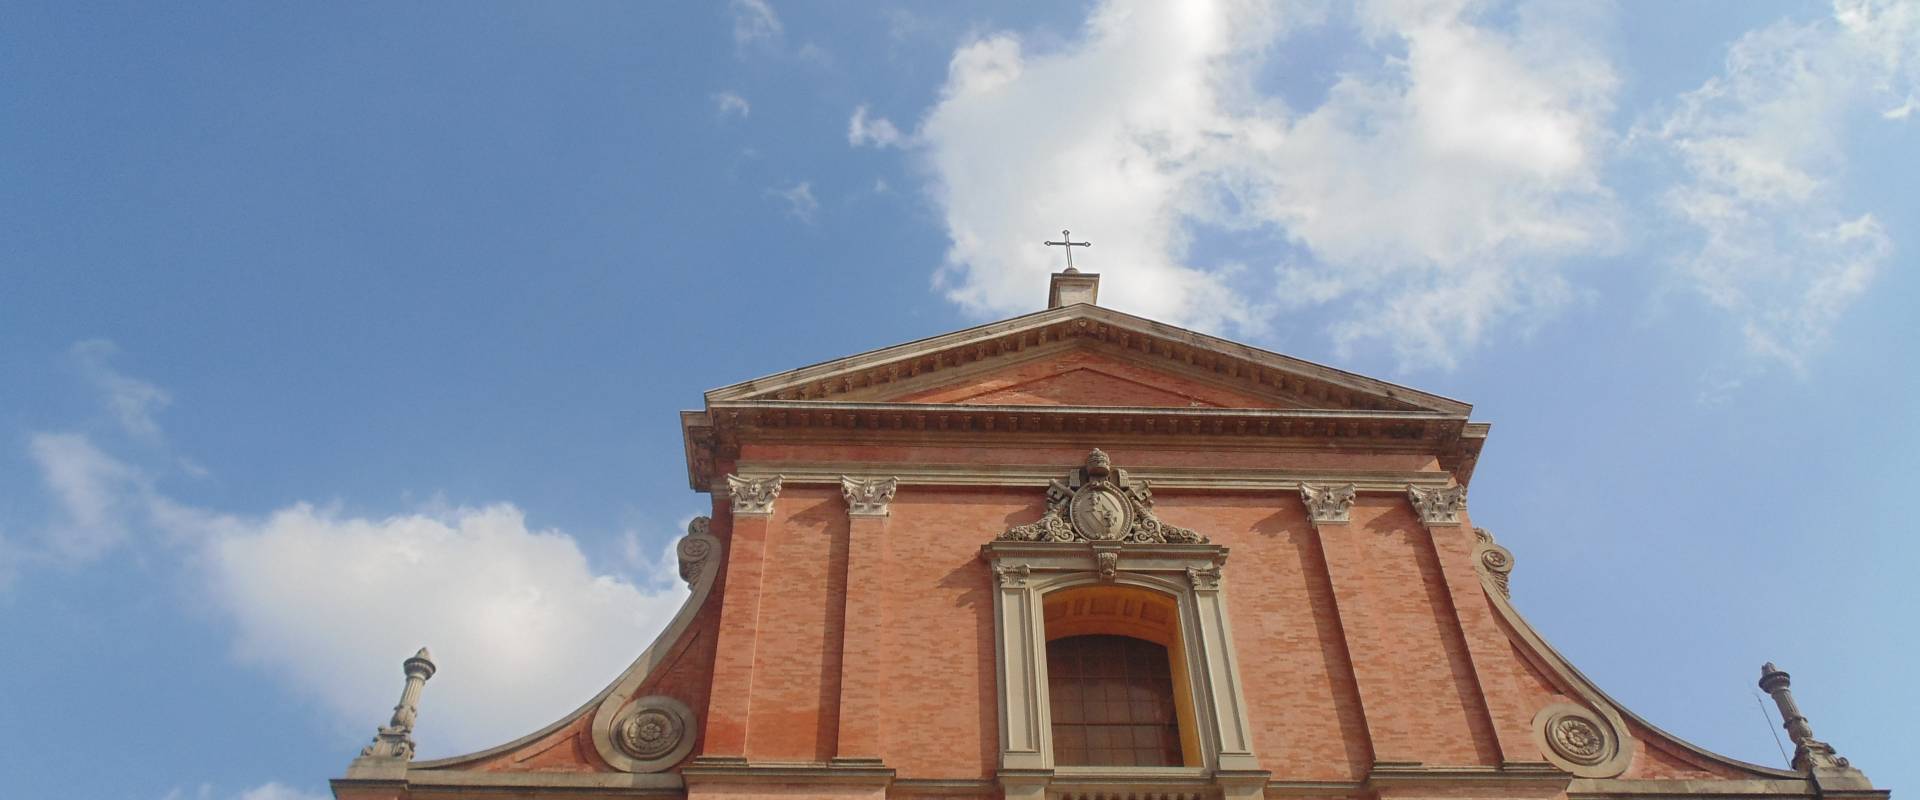 Chiesa cattedrale di San Cassiano (dettaglio finestra alto) foto di Maurolattuga